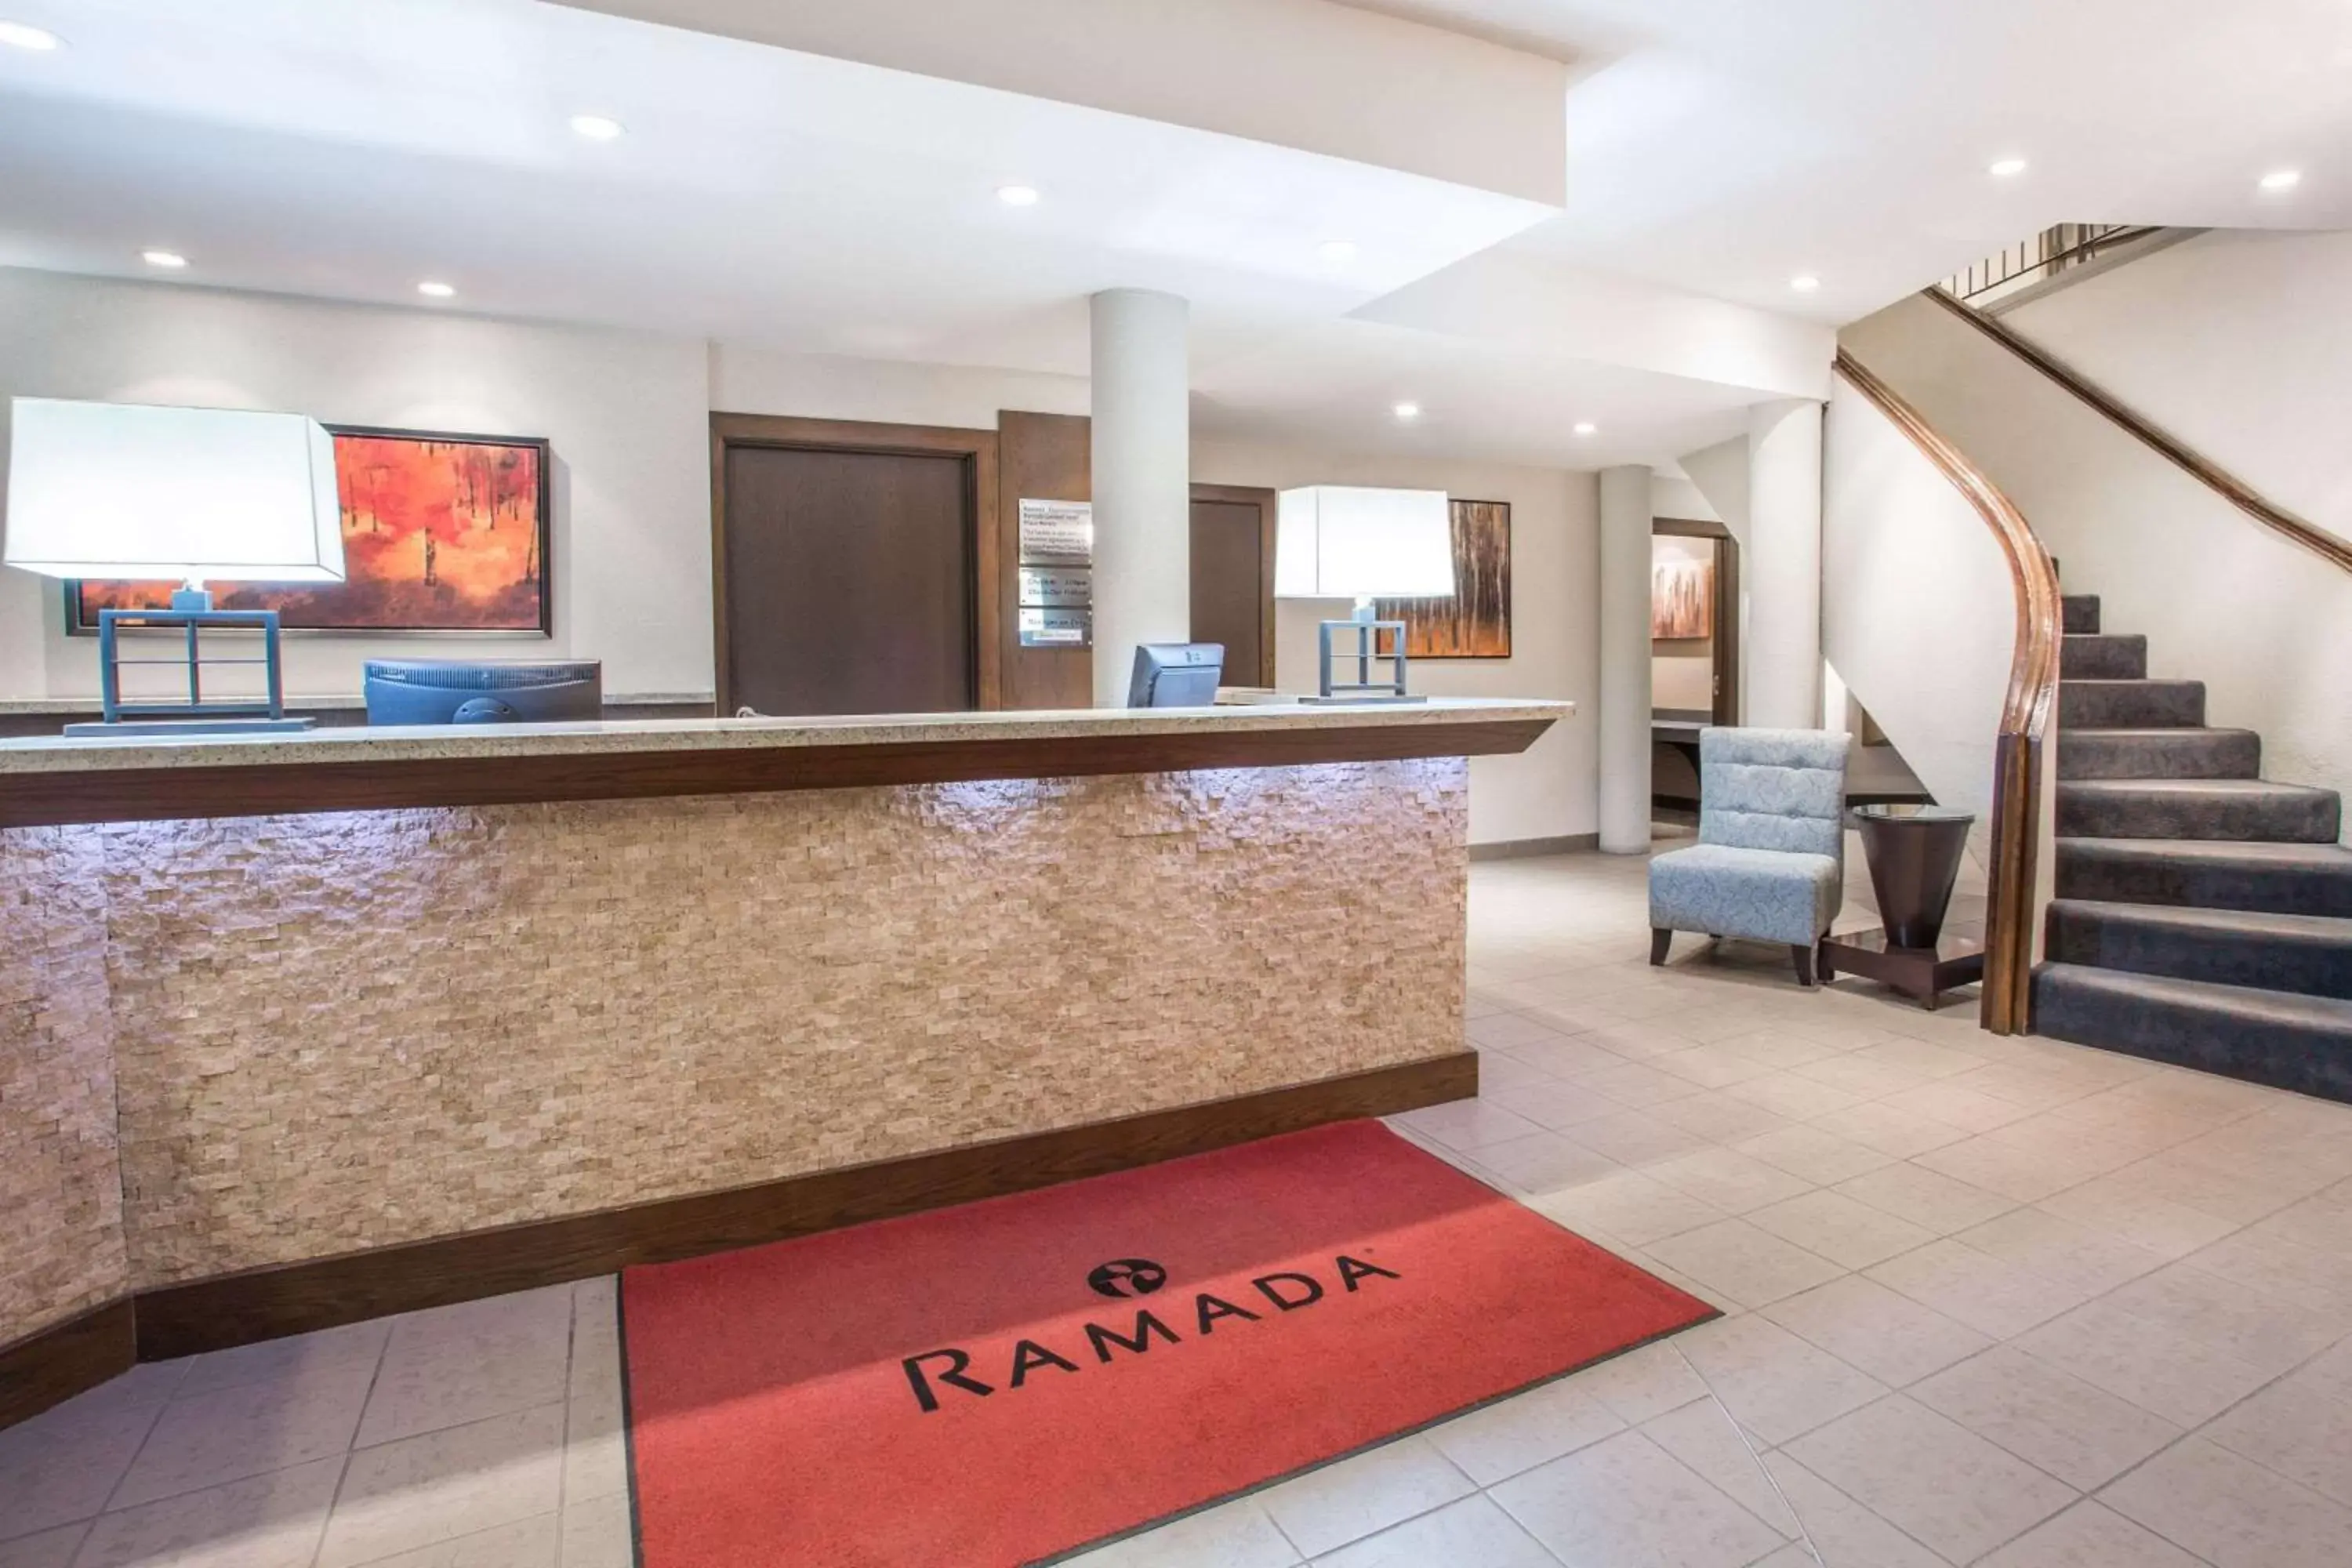 Lobby or reception, Lobby/Reception in Ramada by Wyndham Kamloops